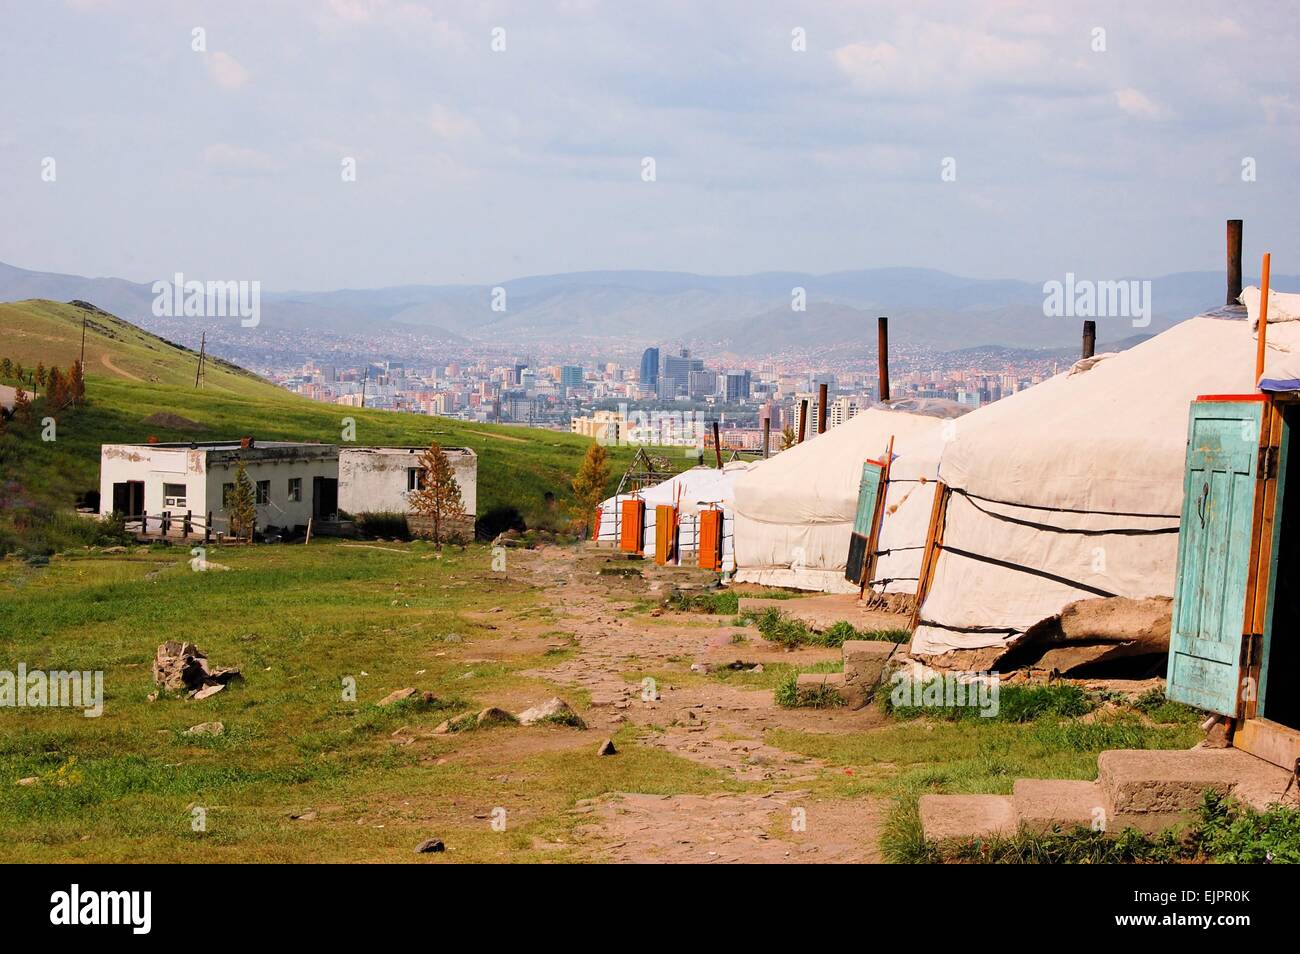 Ger mongole des tentes dans les collines au-dessus de Oulan Bator, Mongolie Banque D'Images